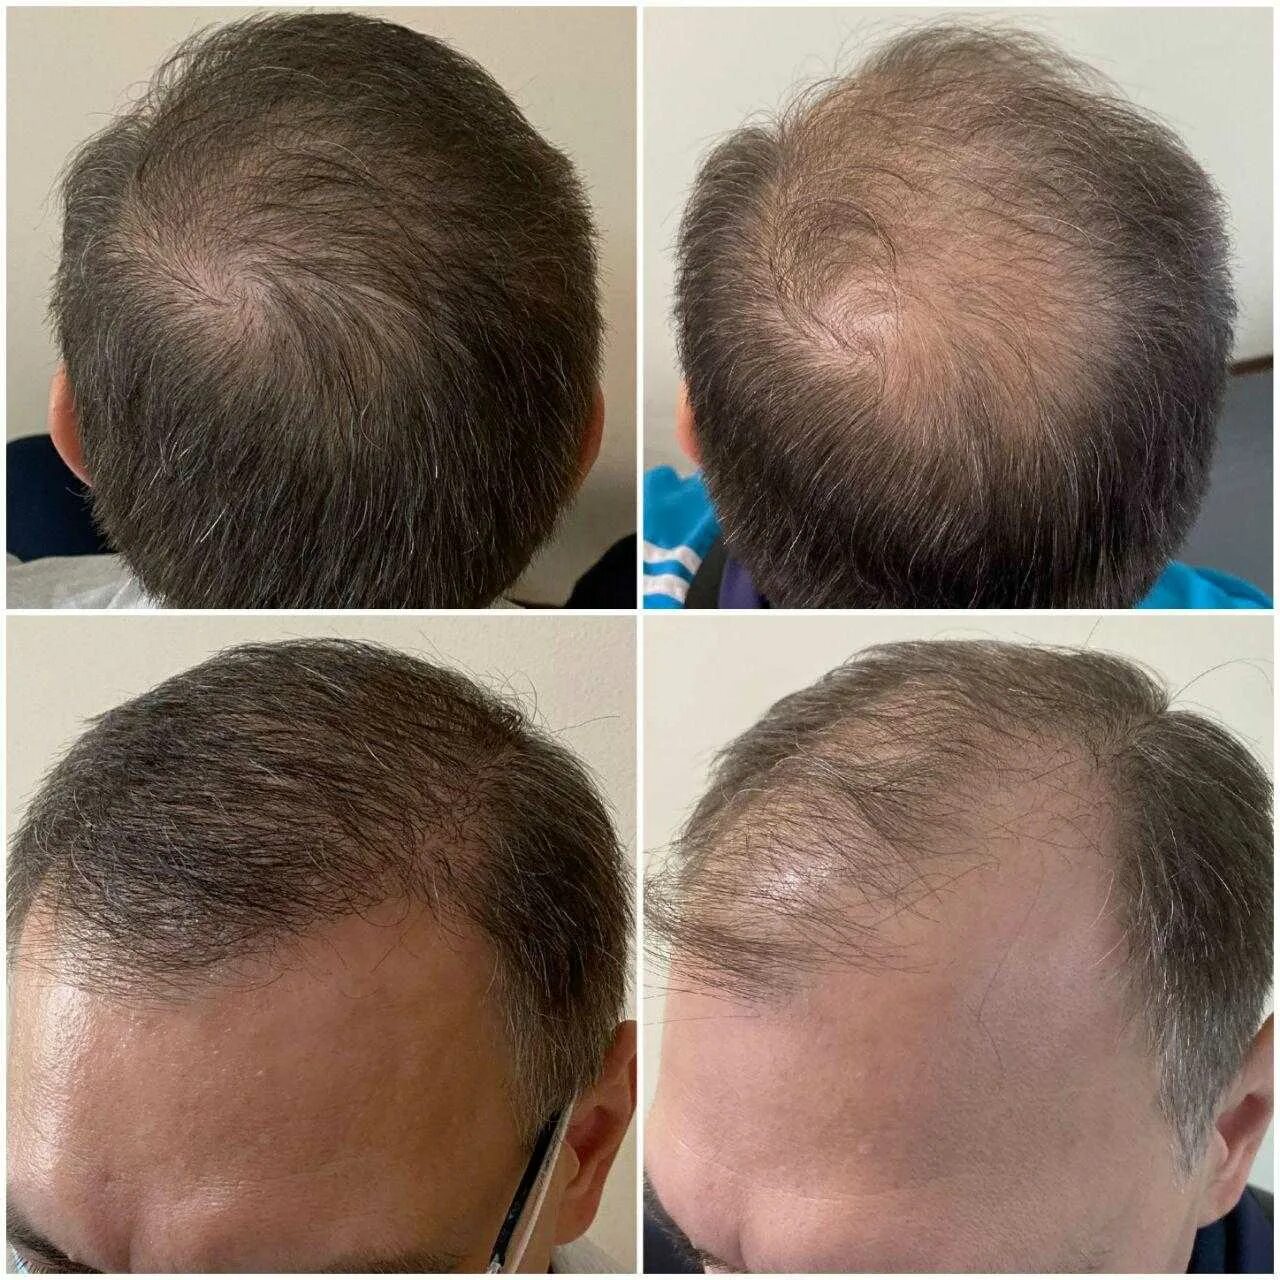 Клиники пересадка волос цены. Графт трансплантация волос. Пересадка волос до и после. Трансплантация волос методом fue.